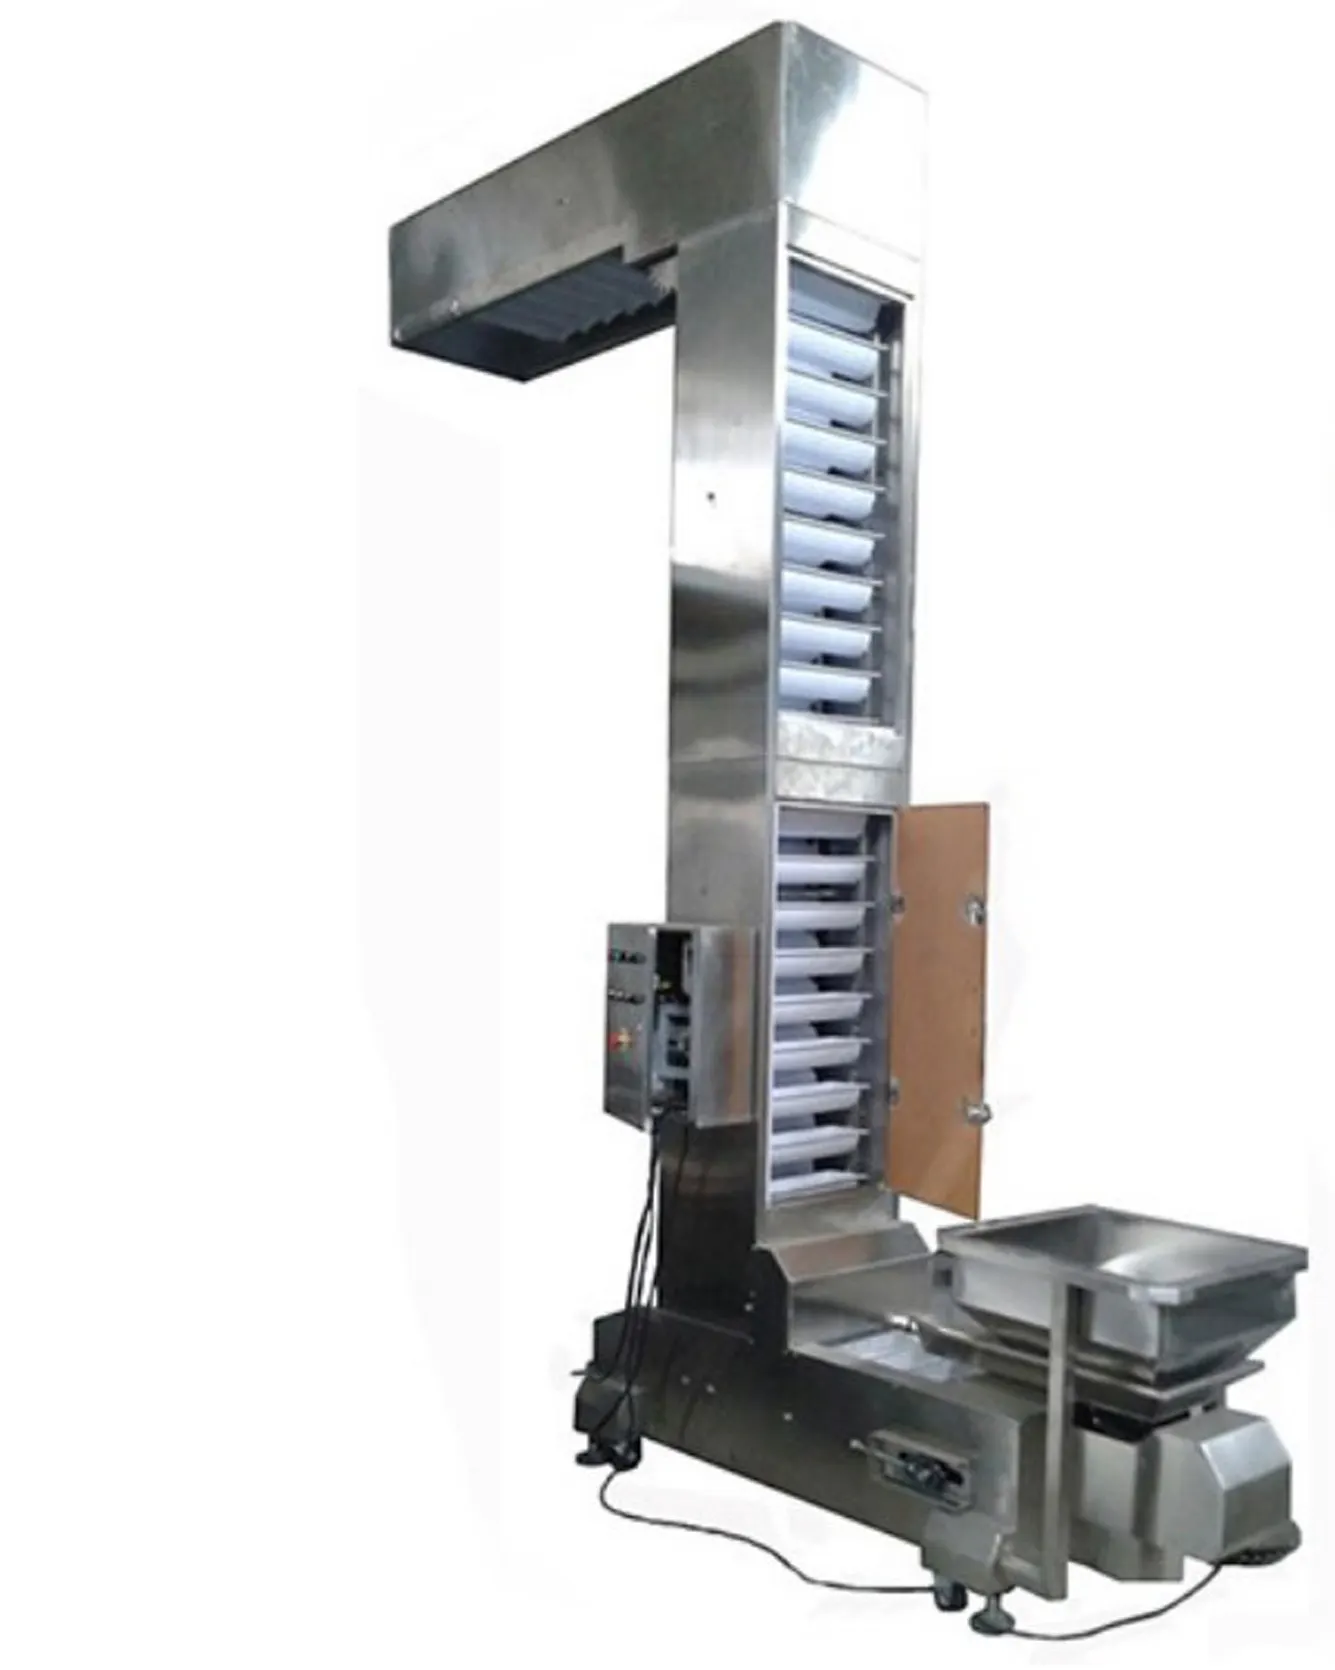 Factory plastic pp hopper inclined conveyor vertical bucket elevator for frozen food grain